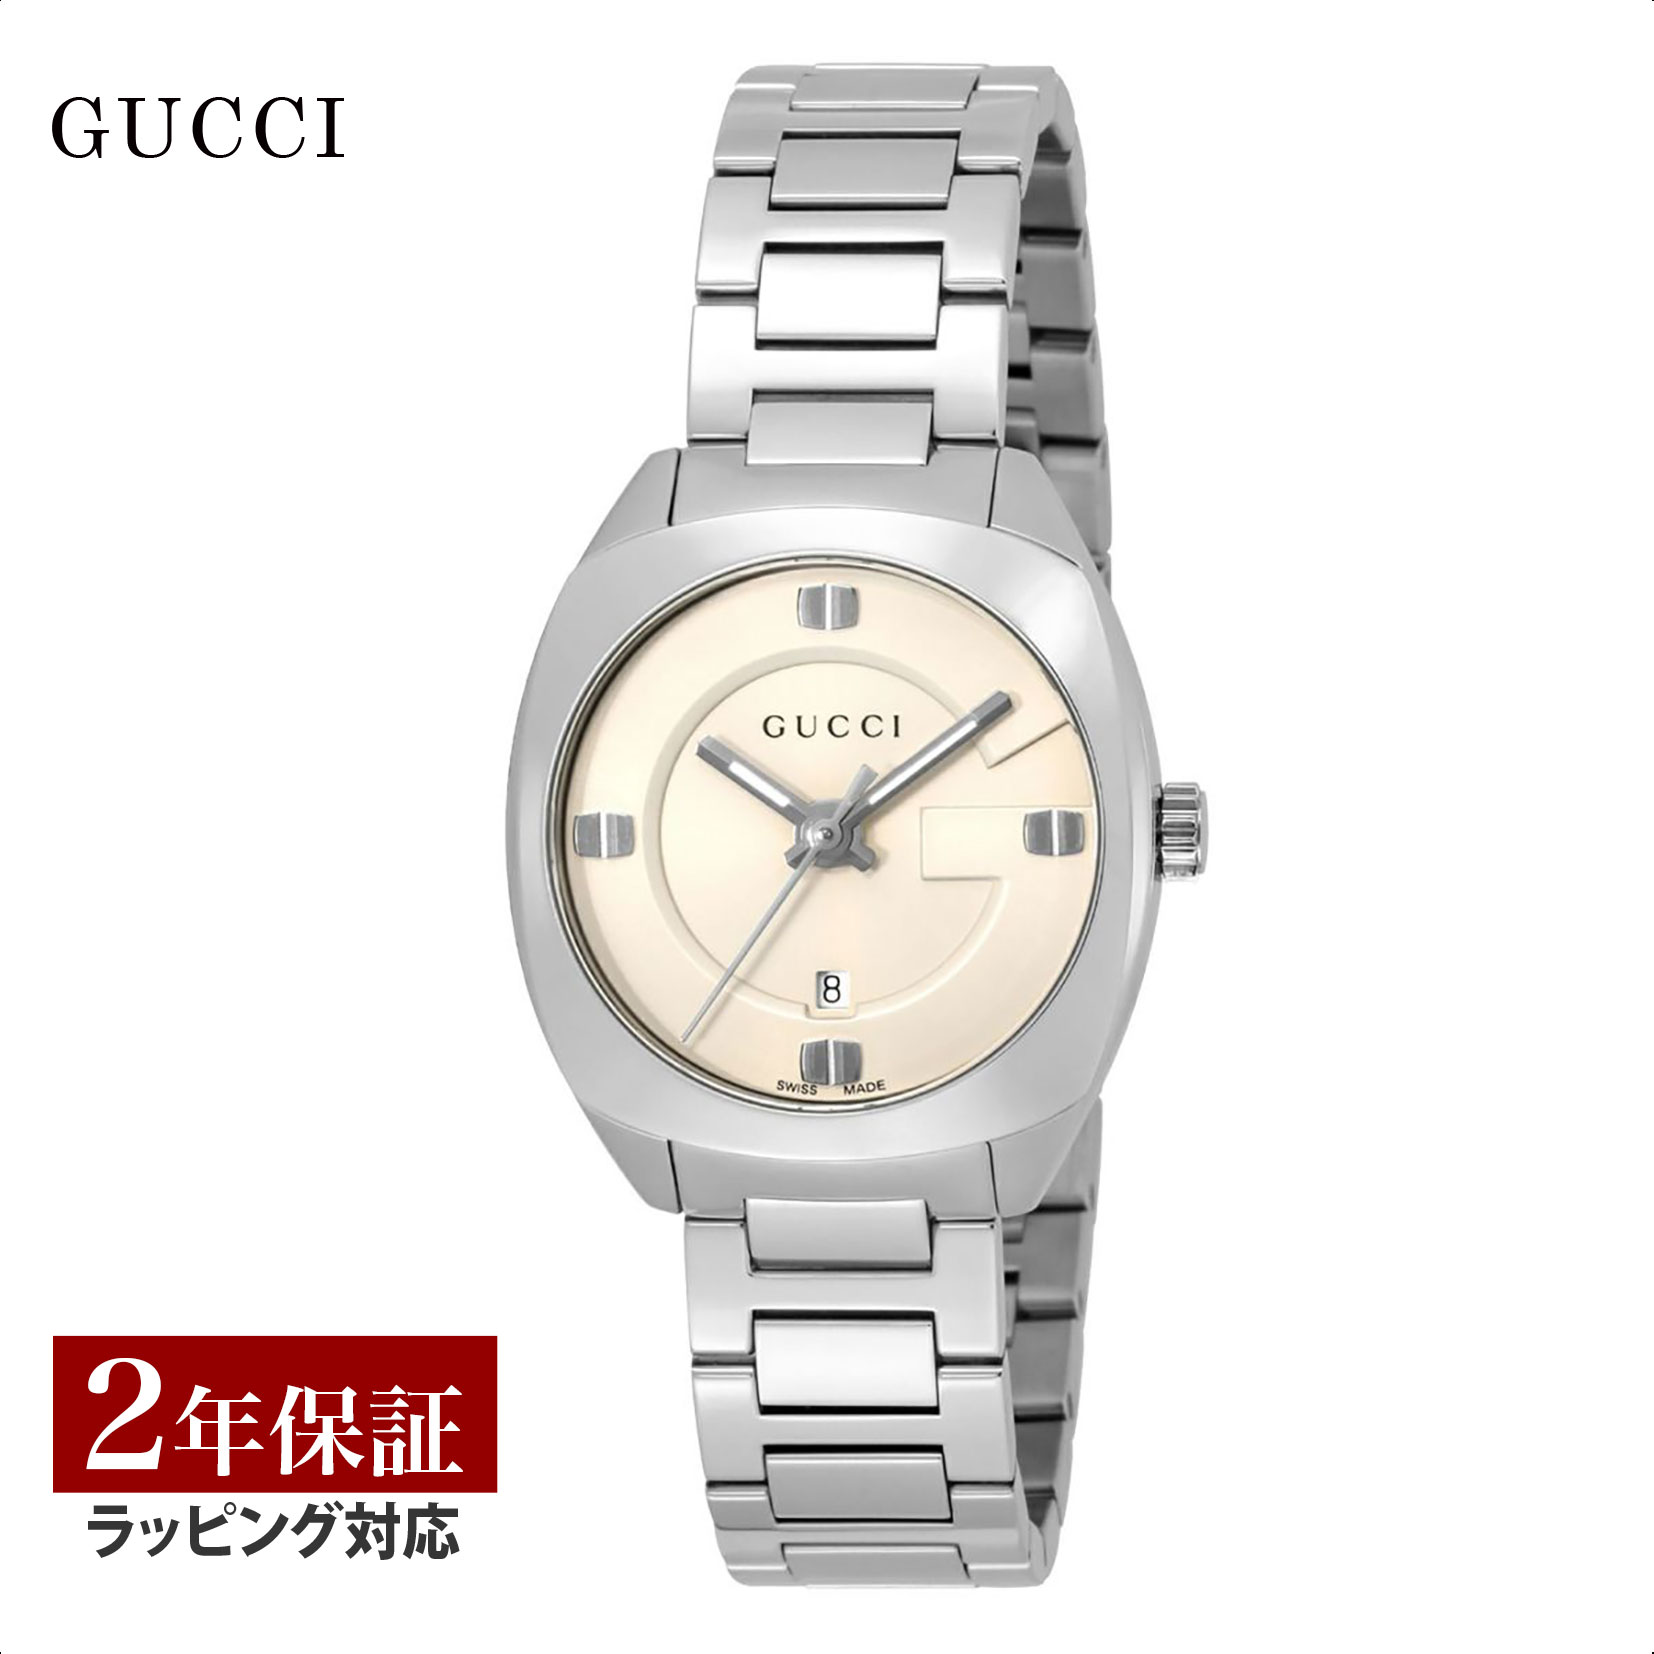 グッチ GUCCI レディース 時計 GG2570 クォーツ ホワイト YA142502 時計 腕時計 高級腕時計 ブランド 【ローン金利無料】